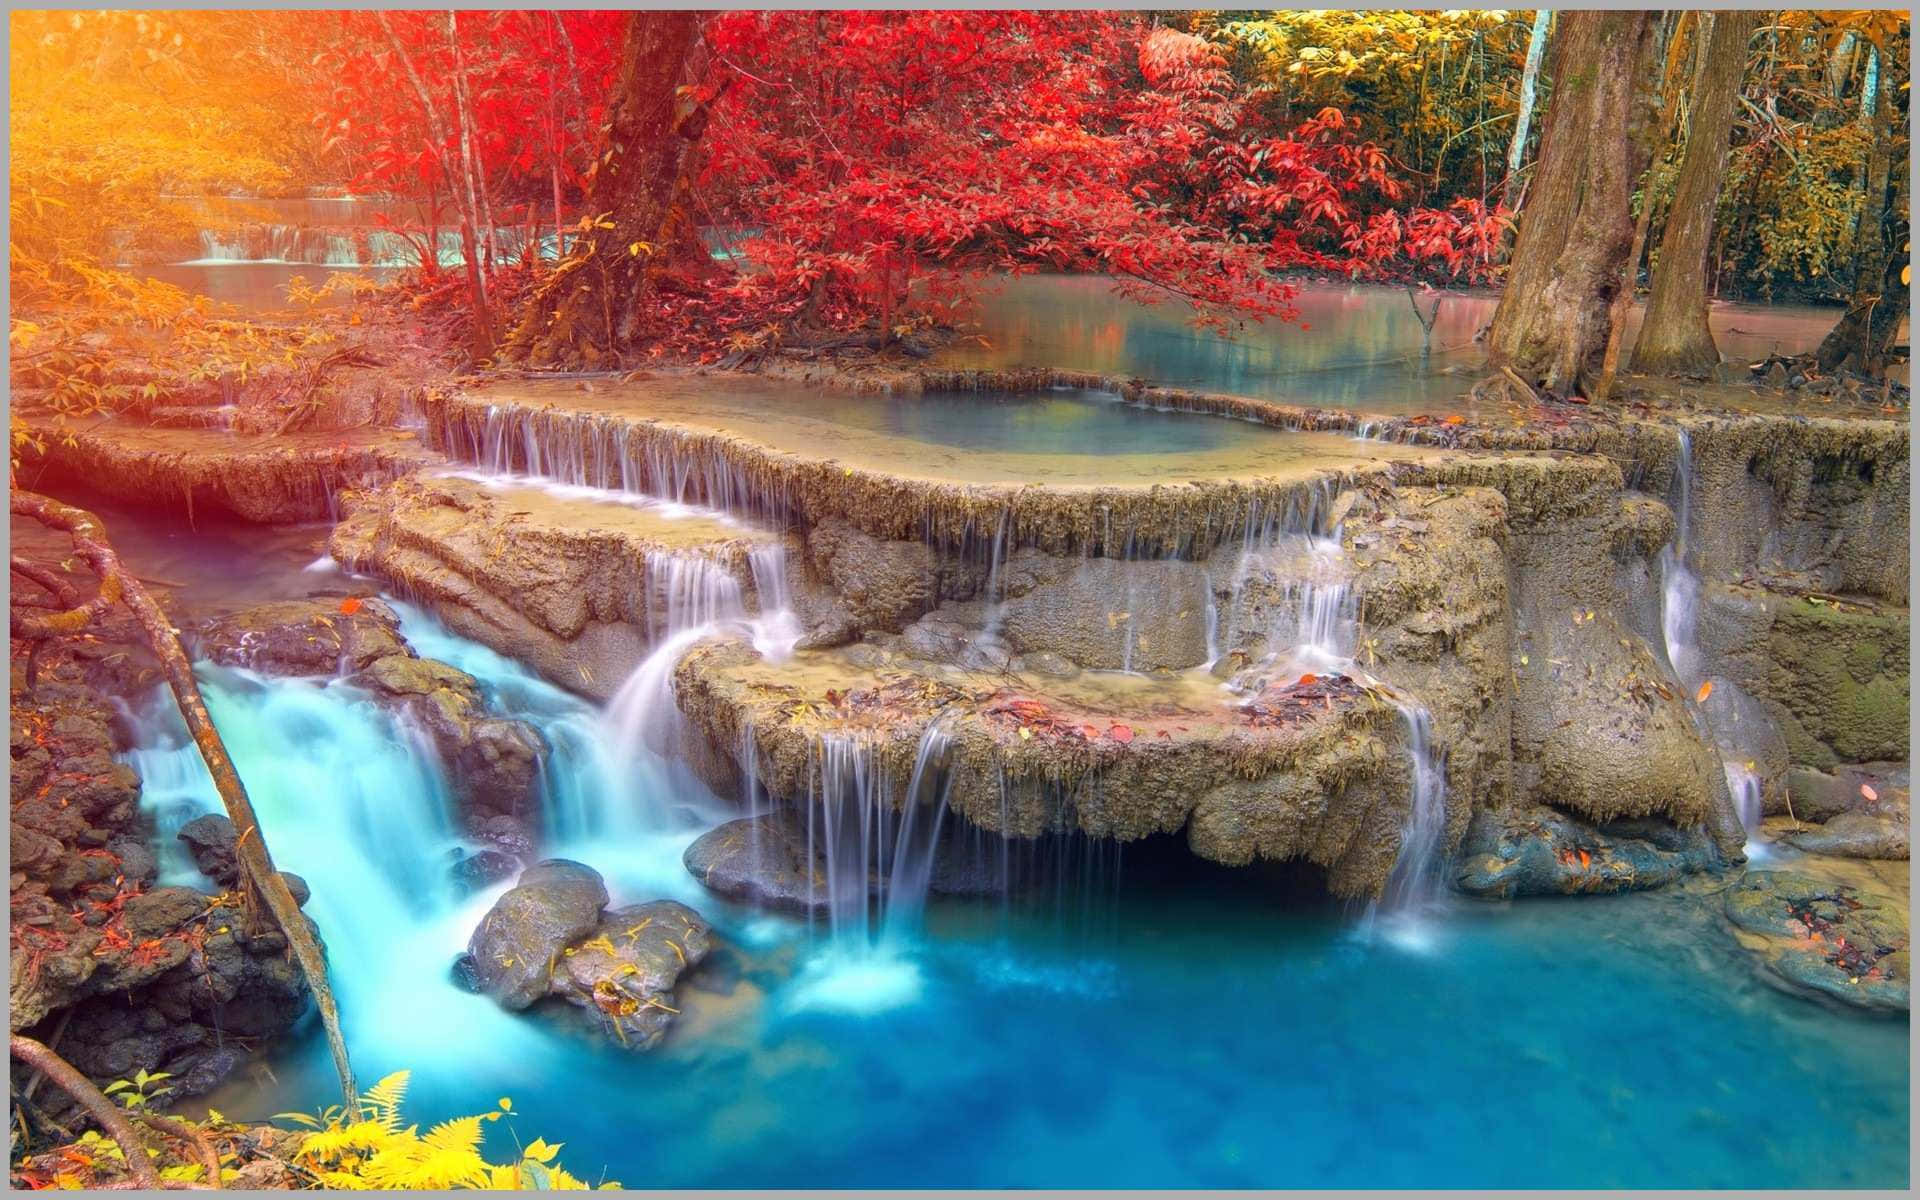 Majestic 3D Waterfall in a Serene Landscape Wallpaper